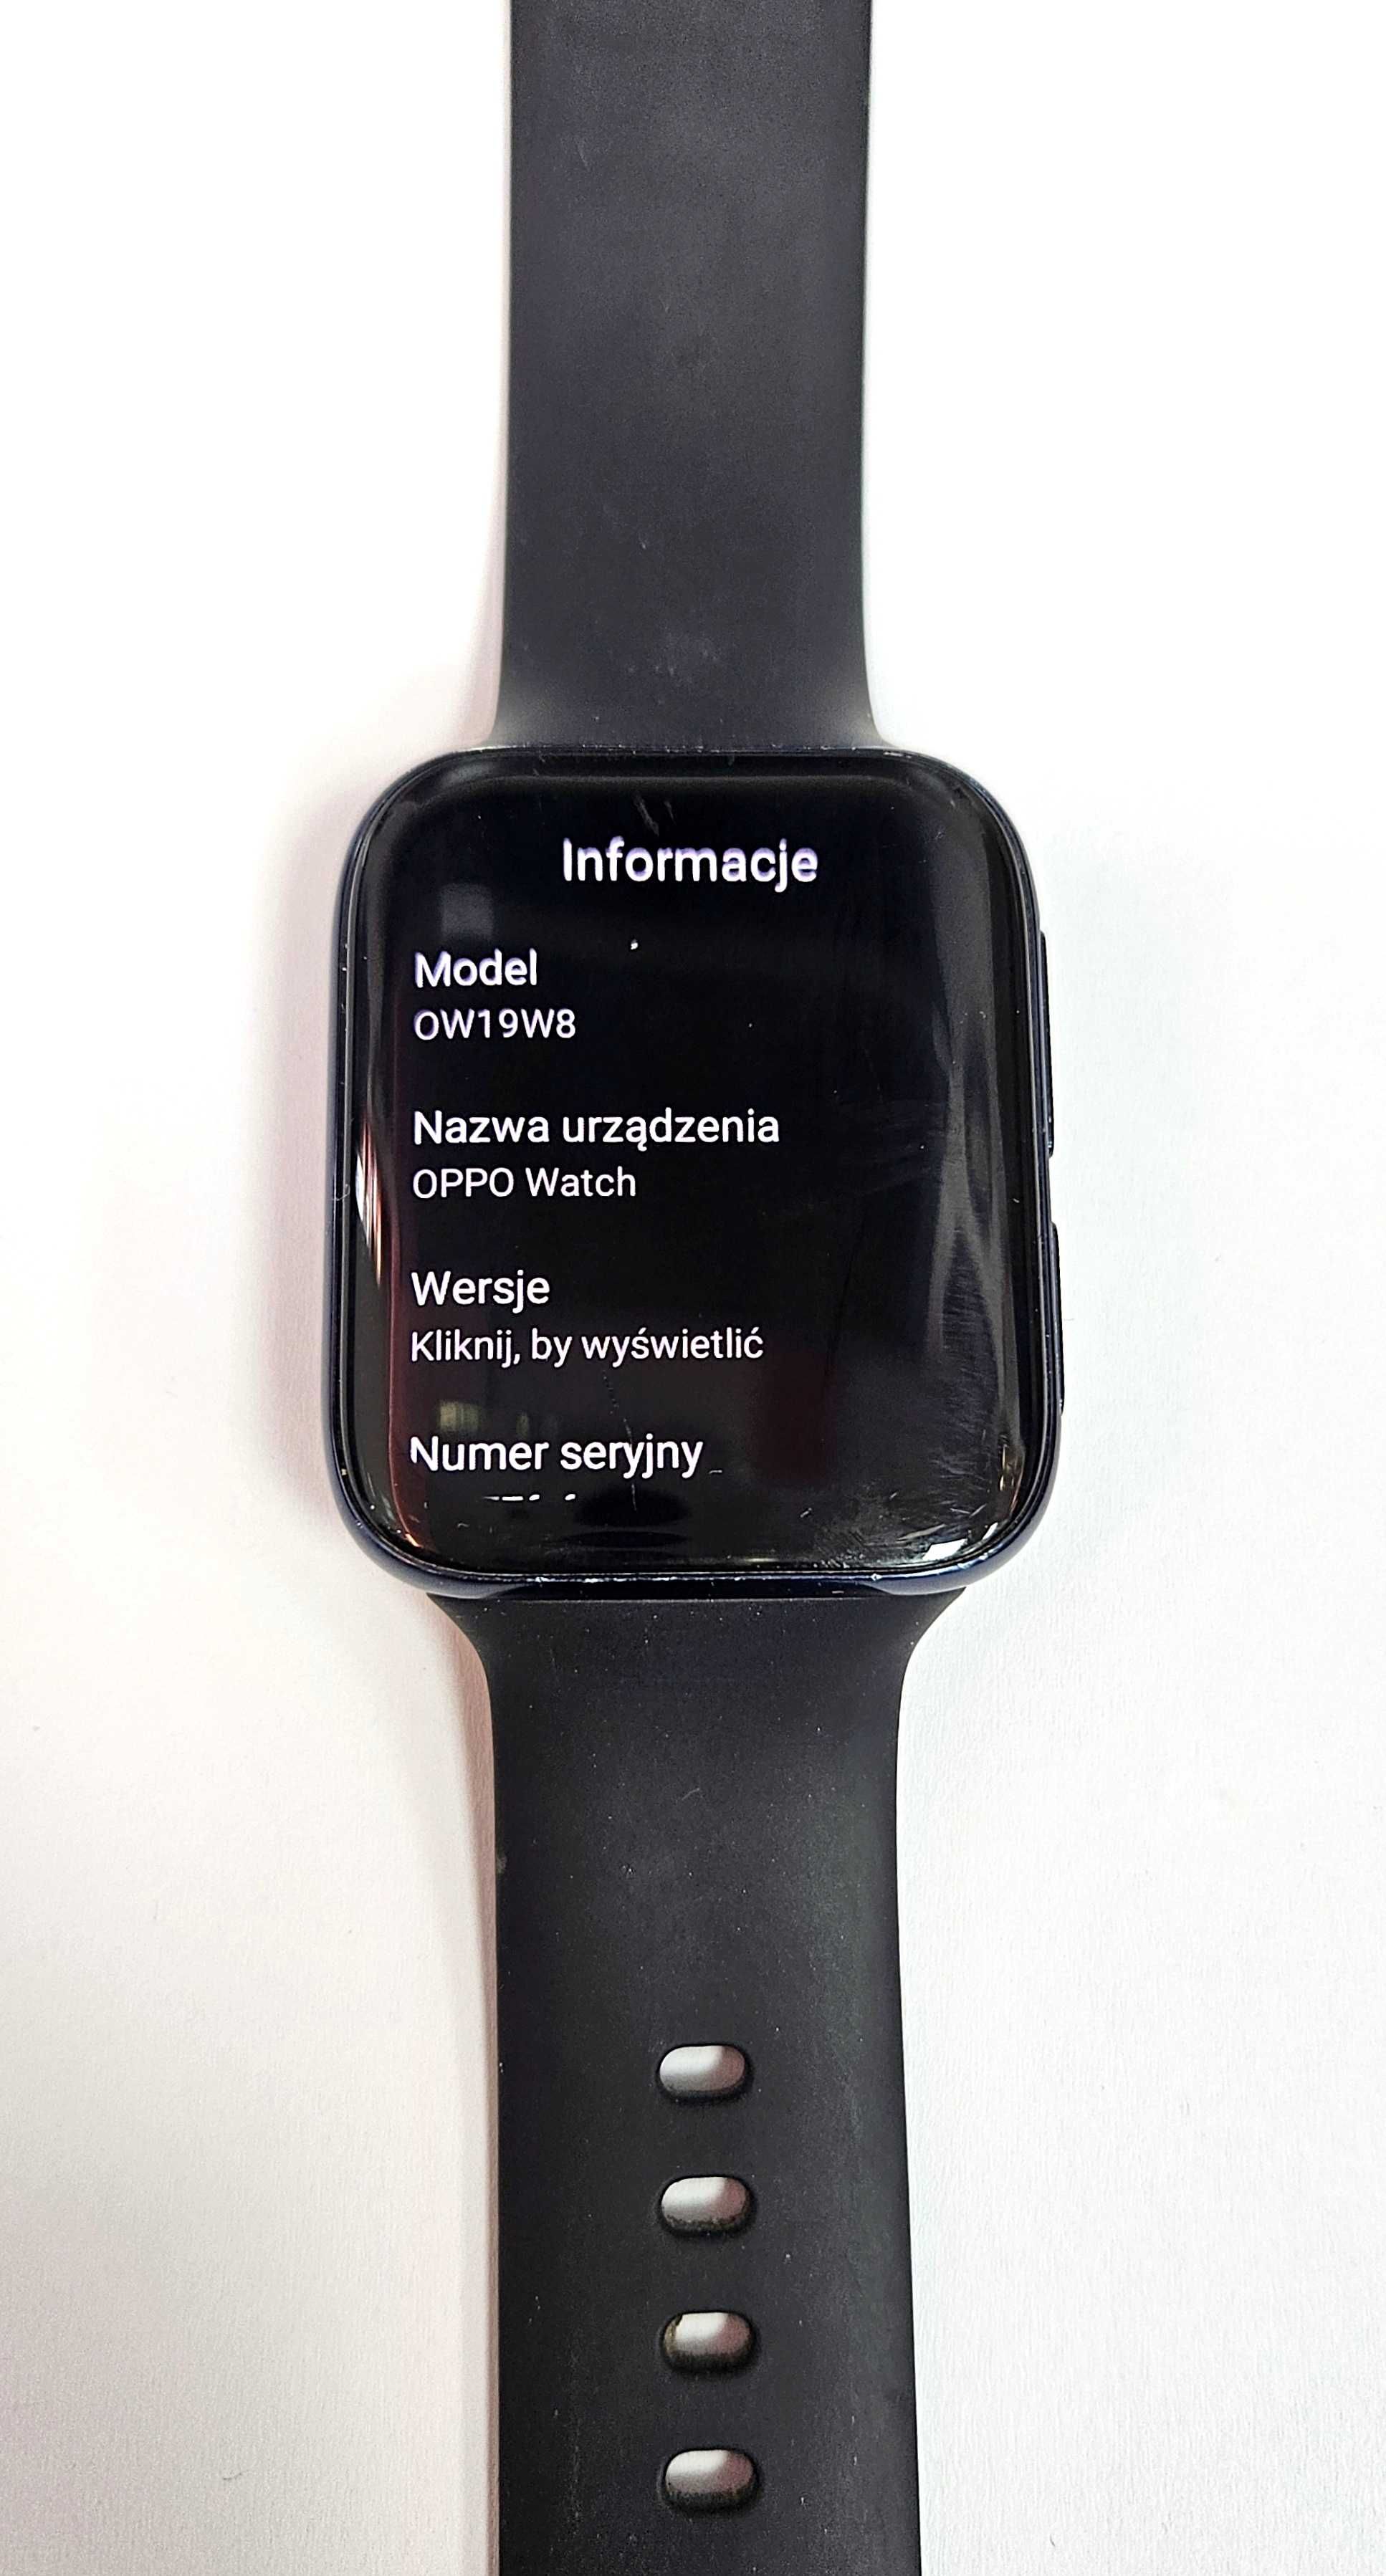 Smartwatch Oppo OW19W8 czarny komplet